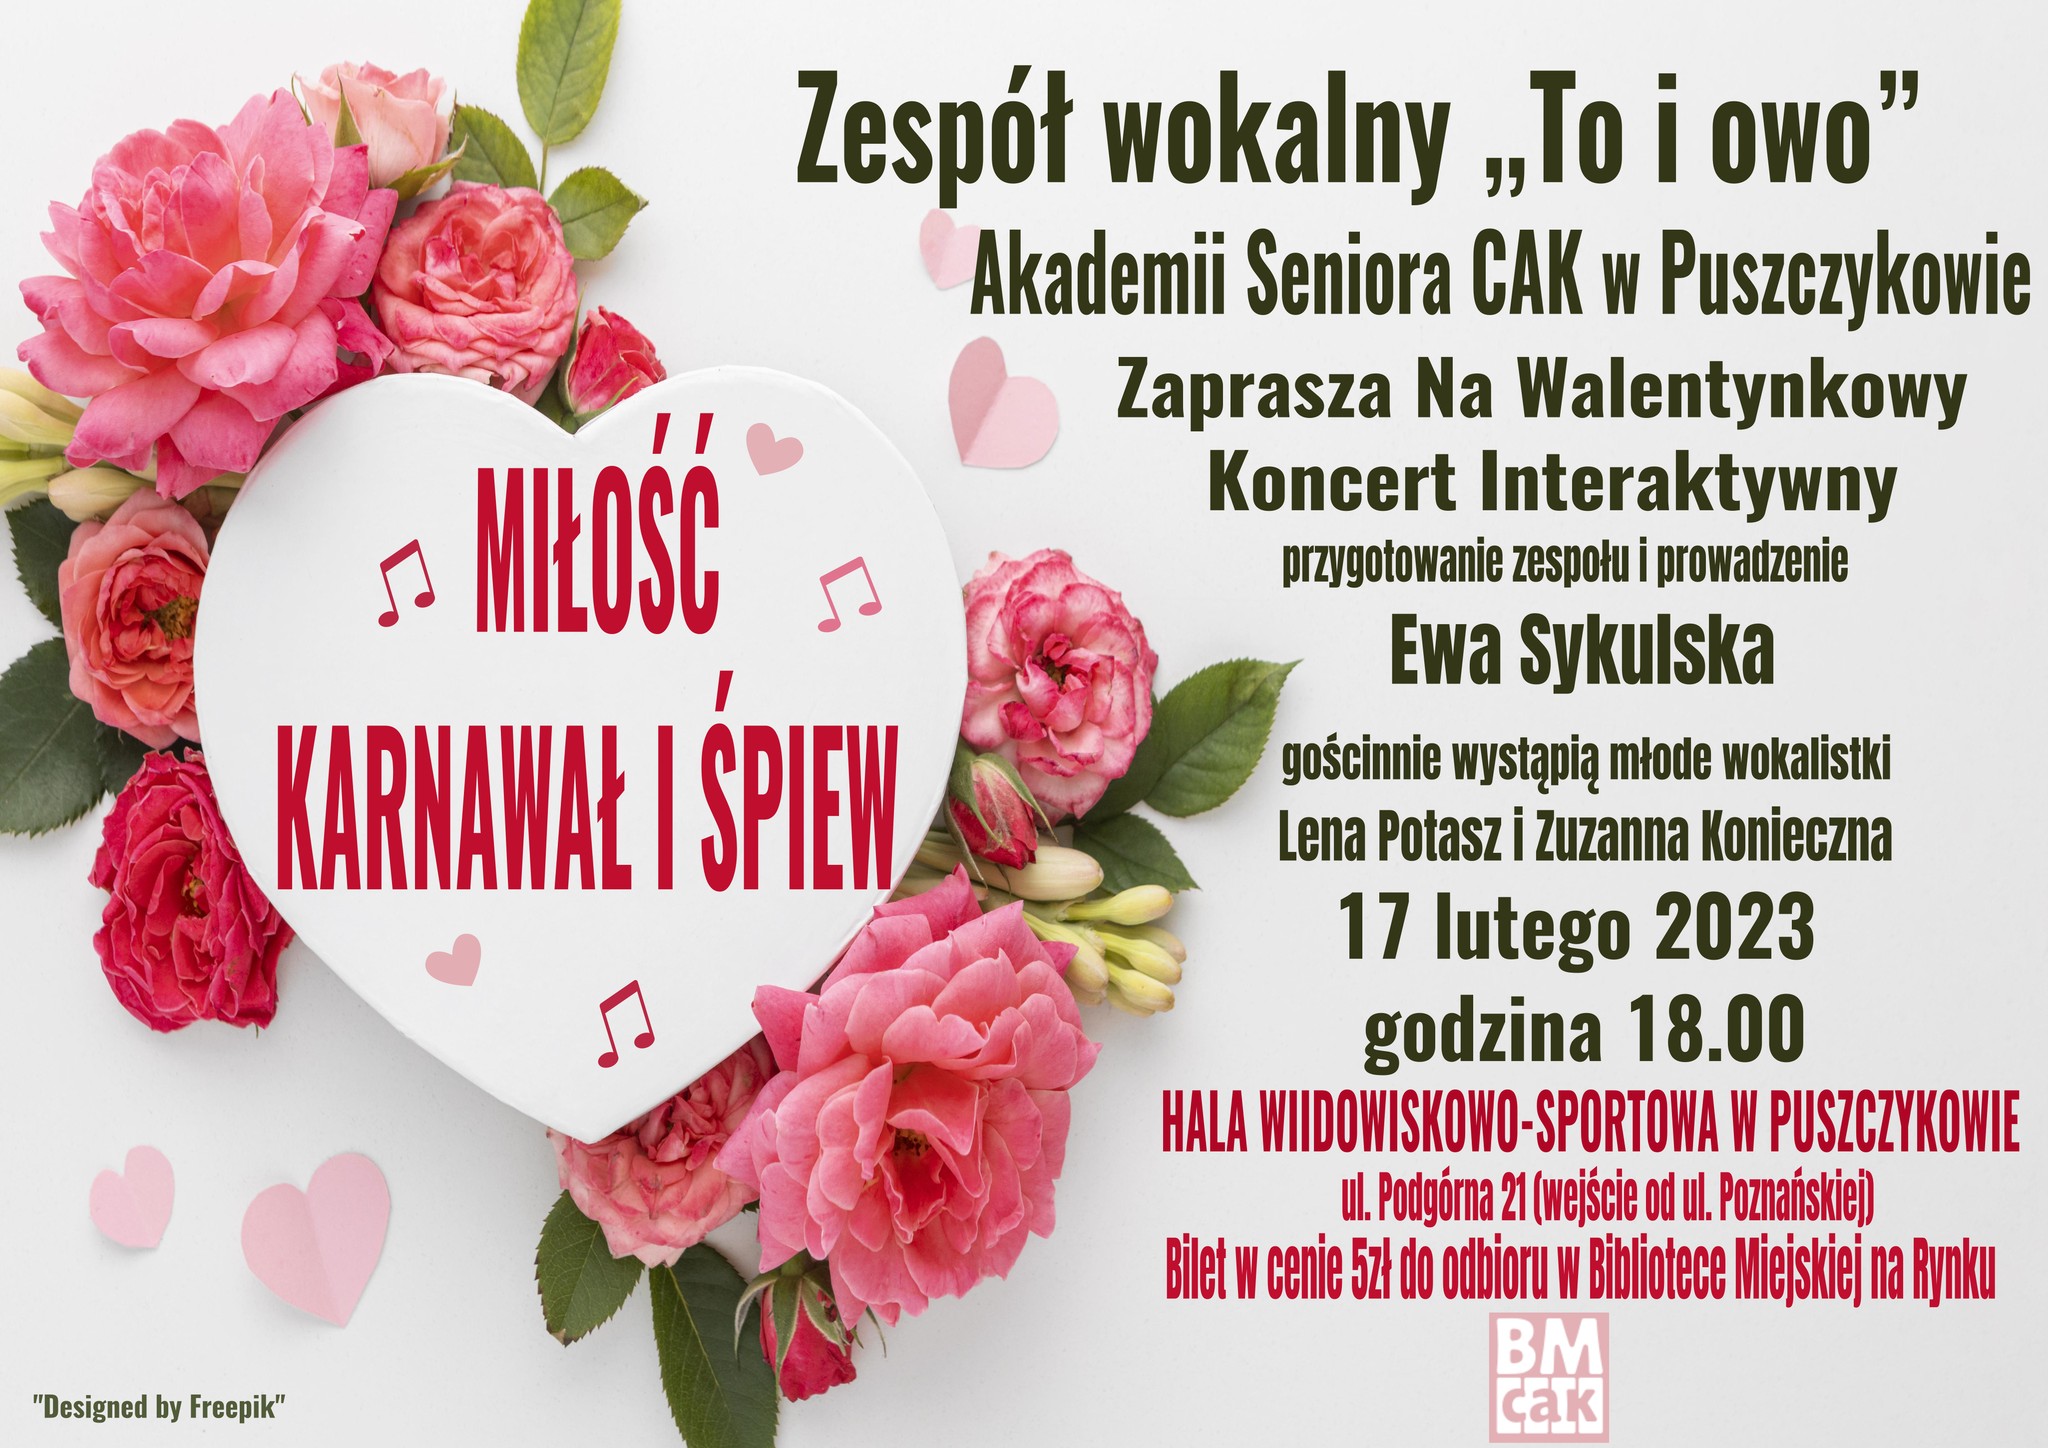 Zespół wokalny "To i owo" Akademii Seniora w Puszczykowie zaprasza na walentynkowy koncert.